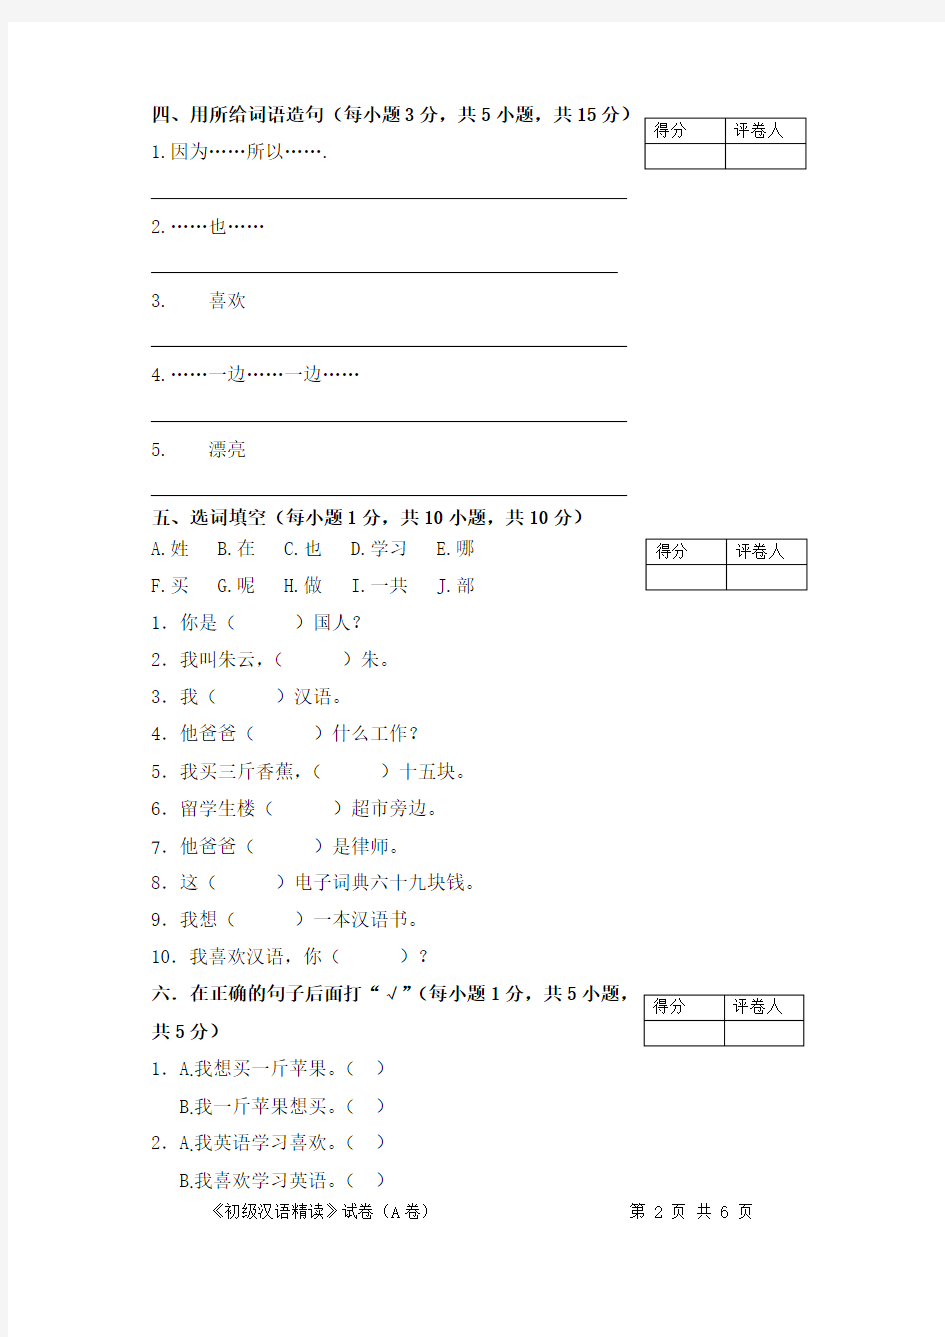 留学生汉语考试试卷及答案